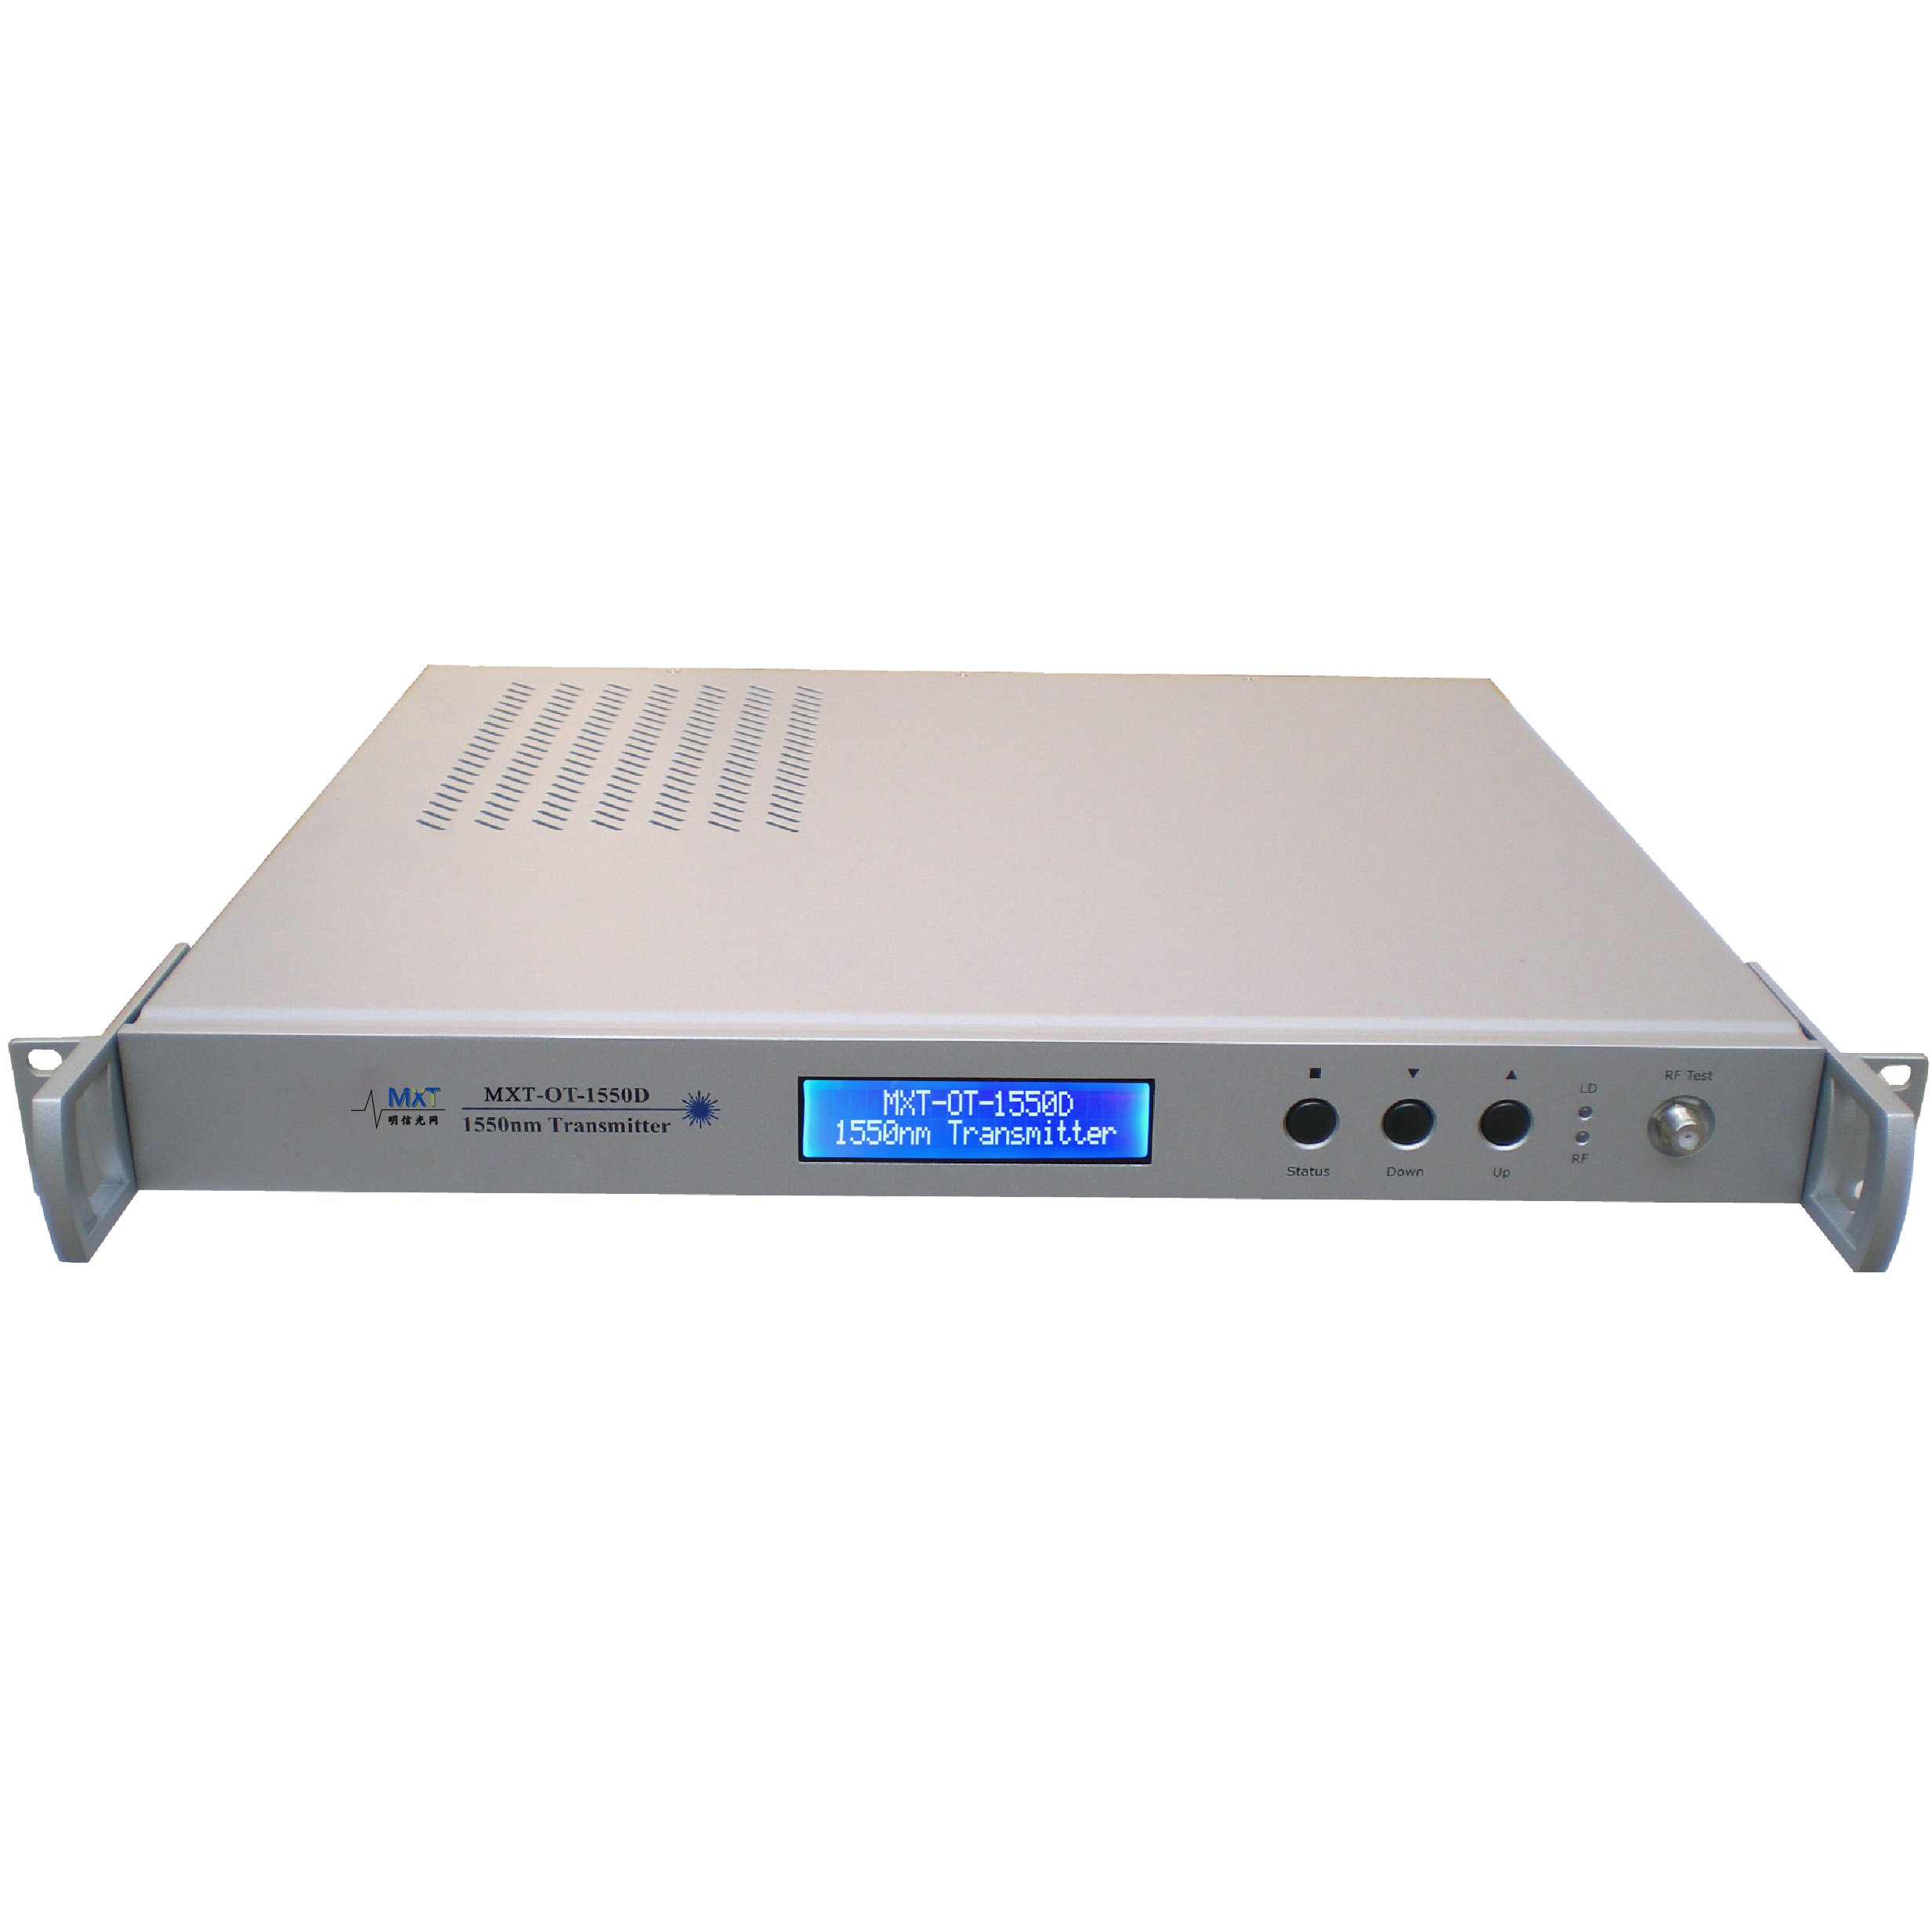  MXT-OT-1550D Directly Modulated Optical Transmitter